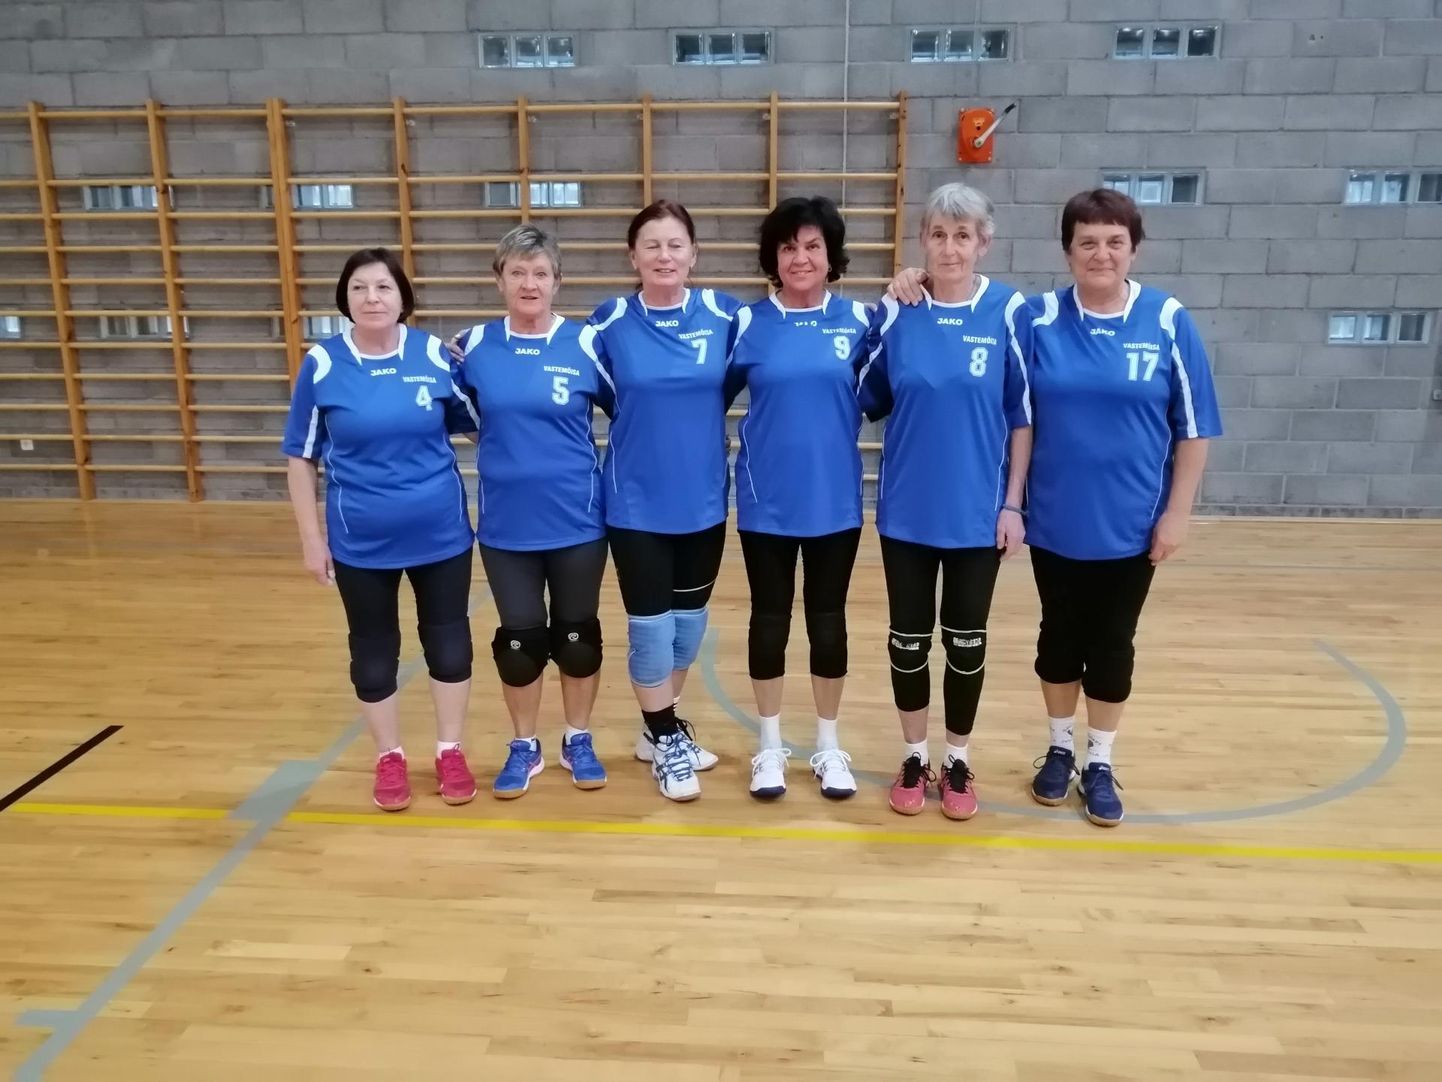 Põhja-Sakala ja Viljandi valla ühisnaiskond tuli naisveteranide 65+ arvestuses Eesti meistriks.